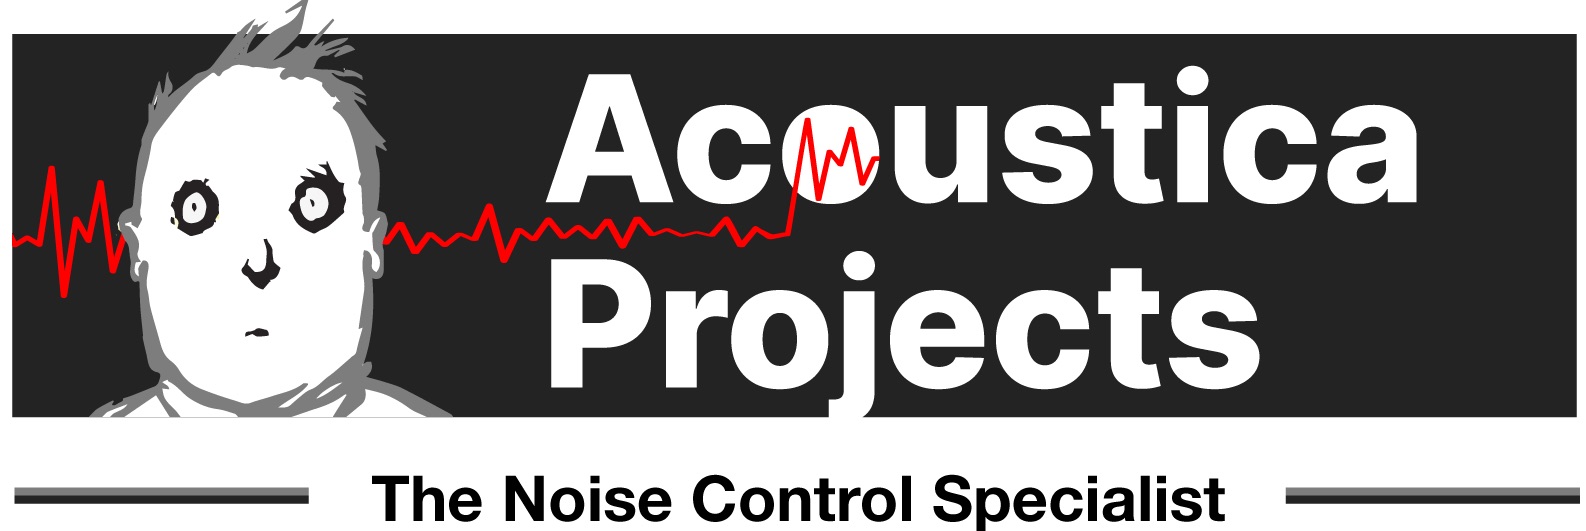 Acoustica Projects Management